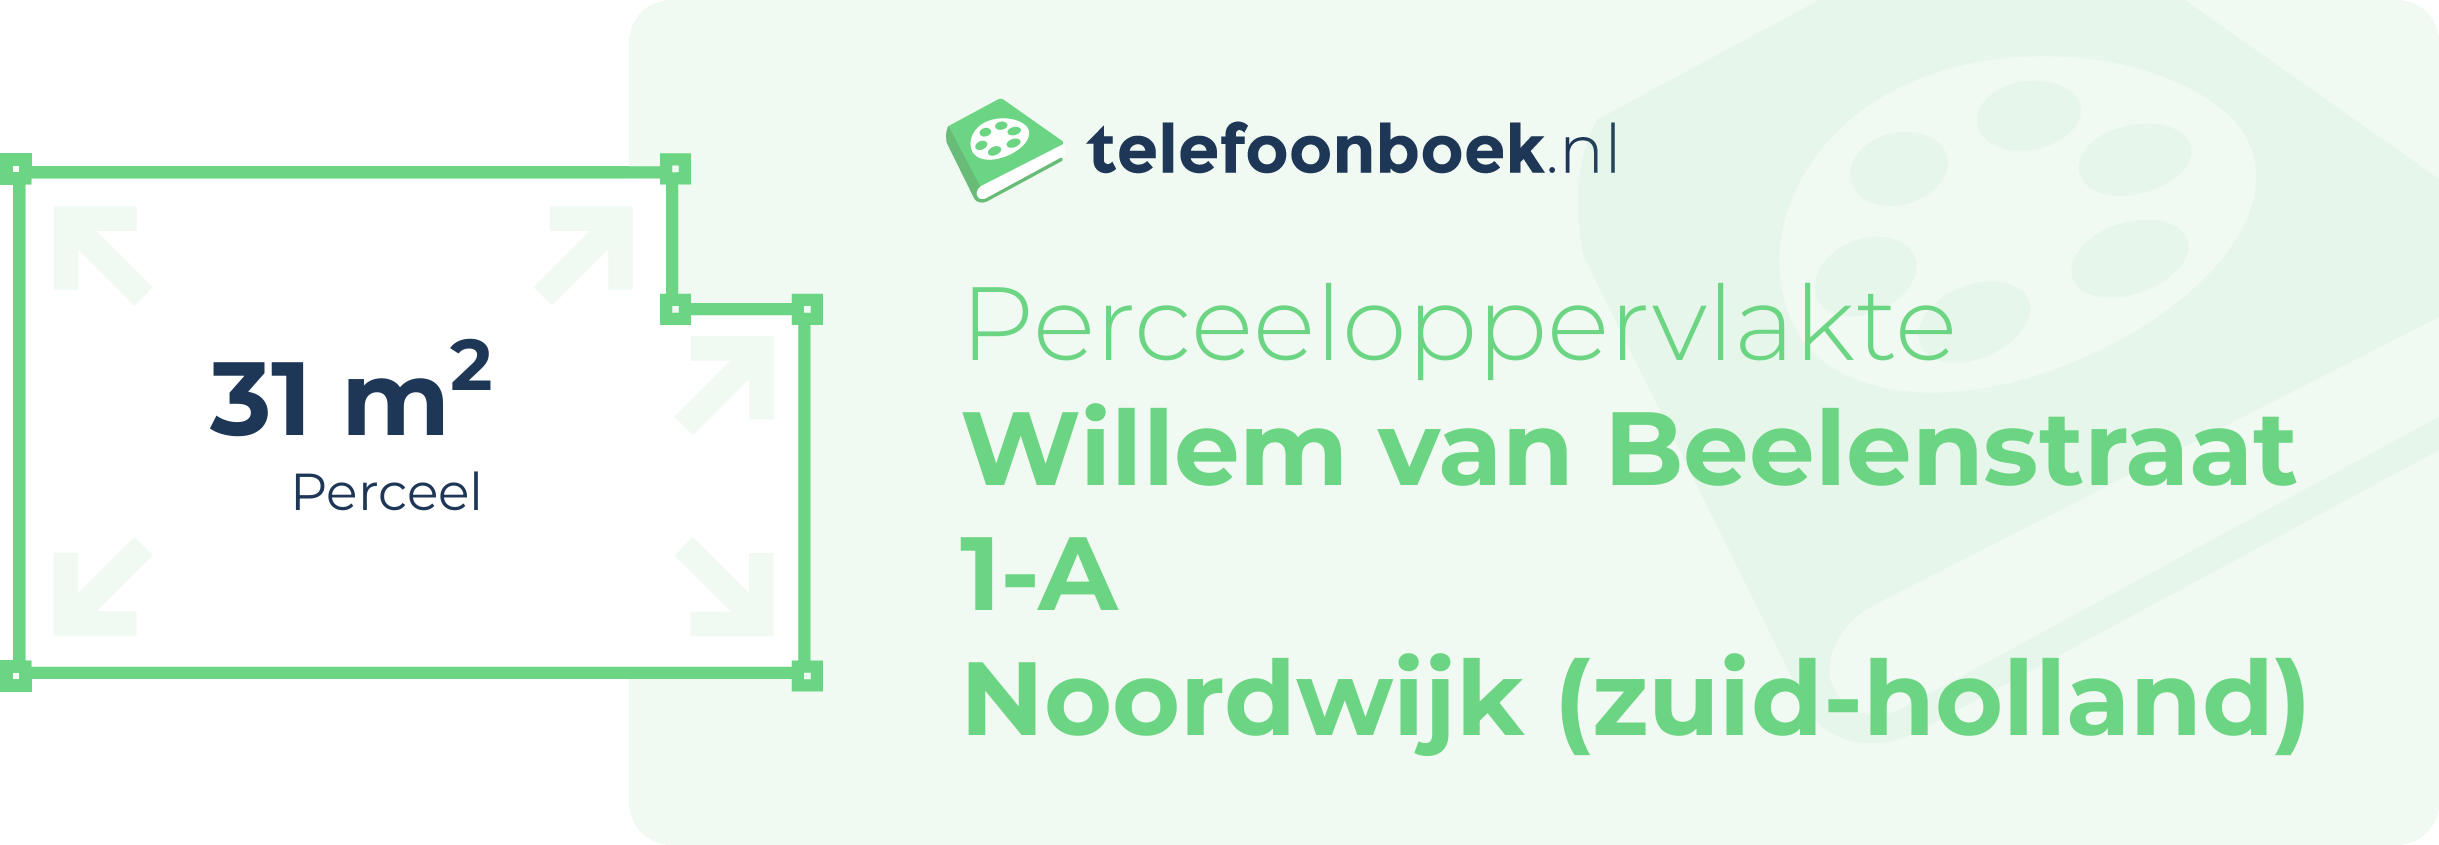 Perceeloppervlakte Willem Van Beelenstraat 1-A Noordwijk (Zuid-Holland)